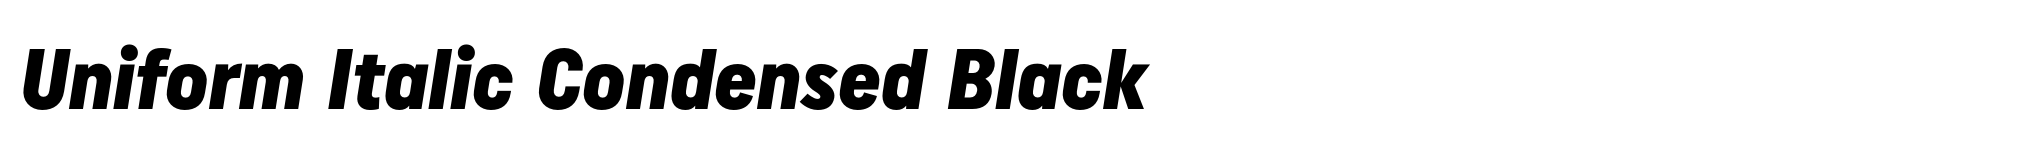 Uniform Italic Condensed Black image